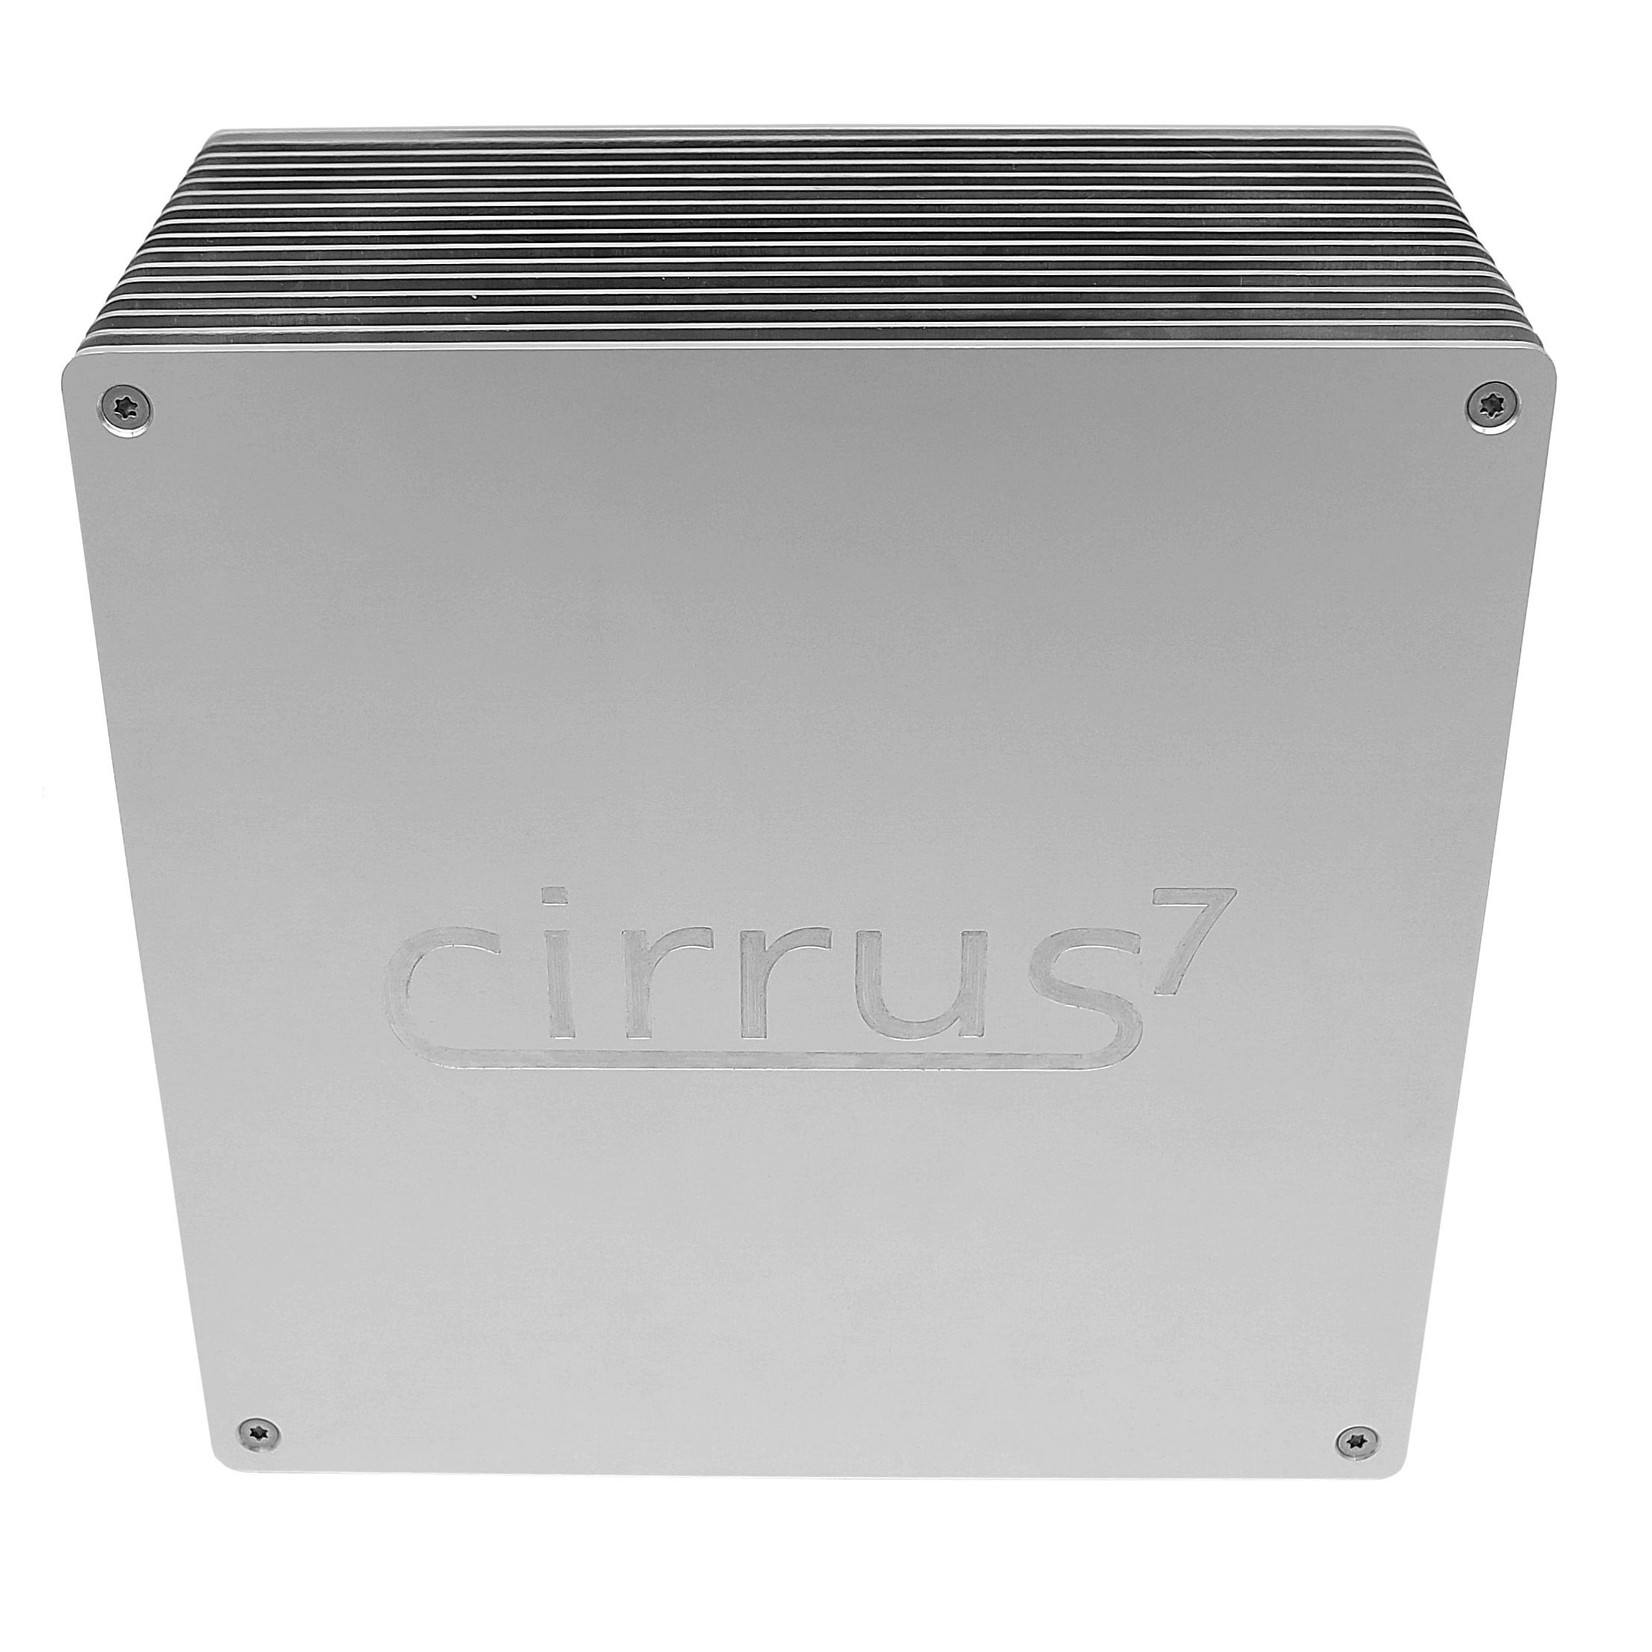 Cirrus7 o PC completamente silencioso com arrefecimento sem ventoinha